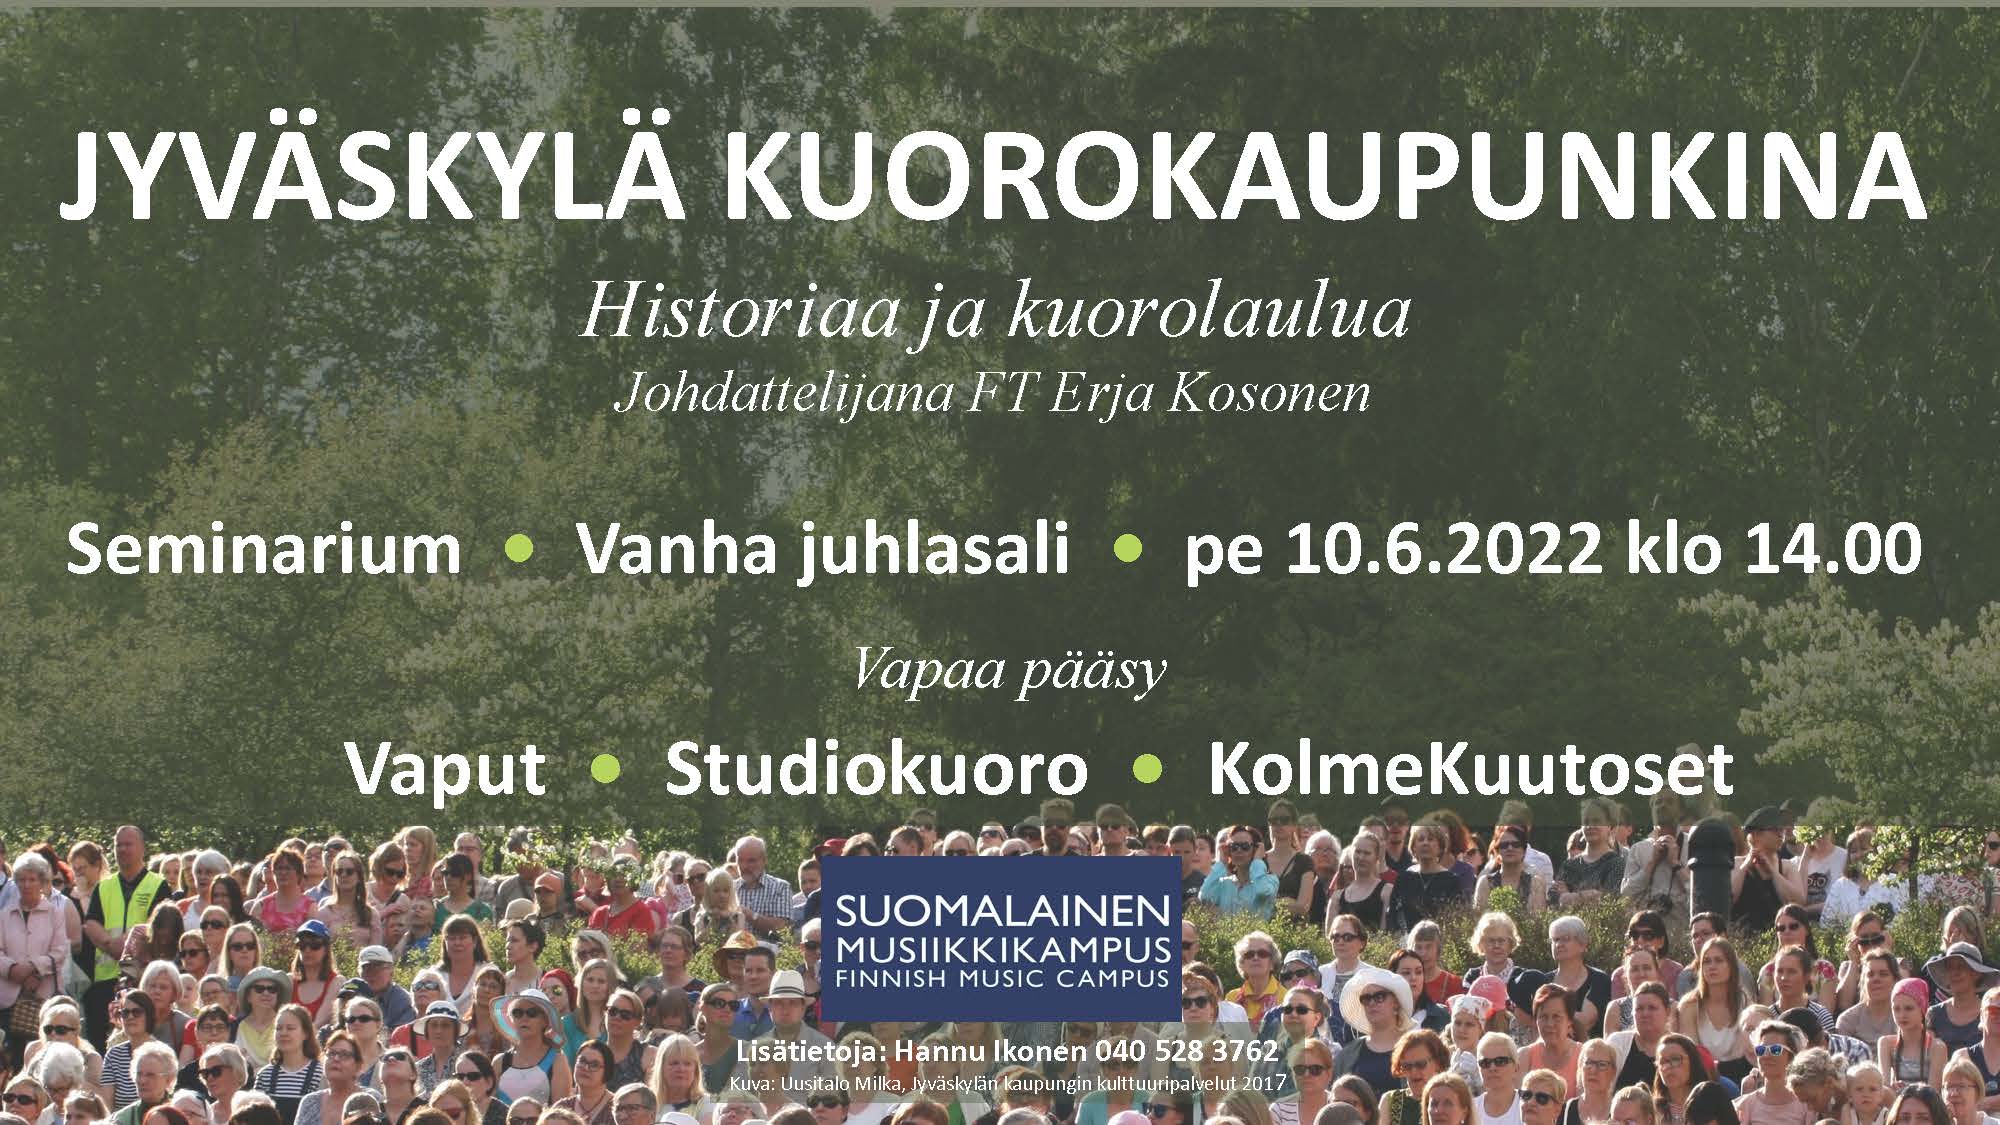 Jyväskylä kuorokaupunkina -matinea 10.6.2022